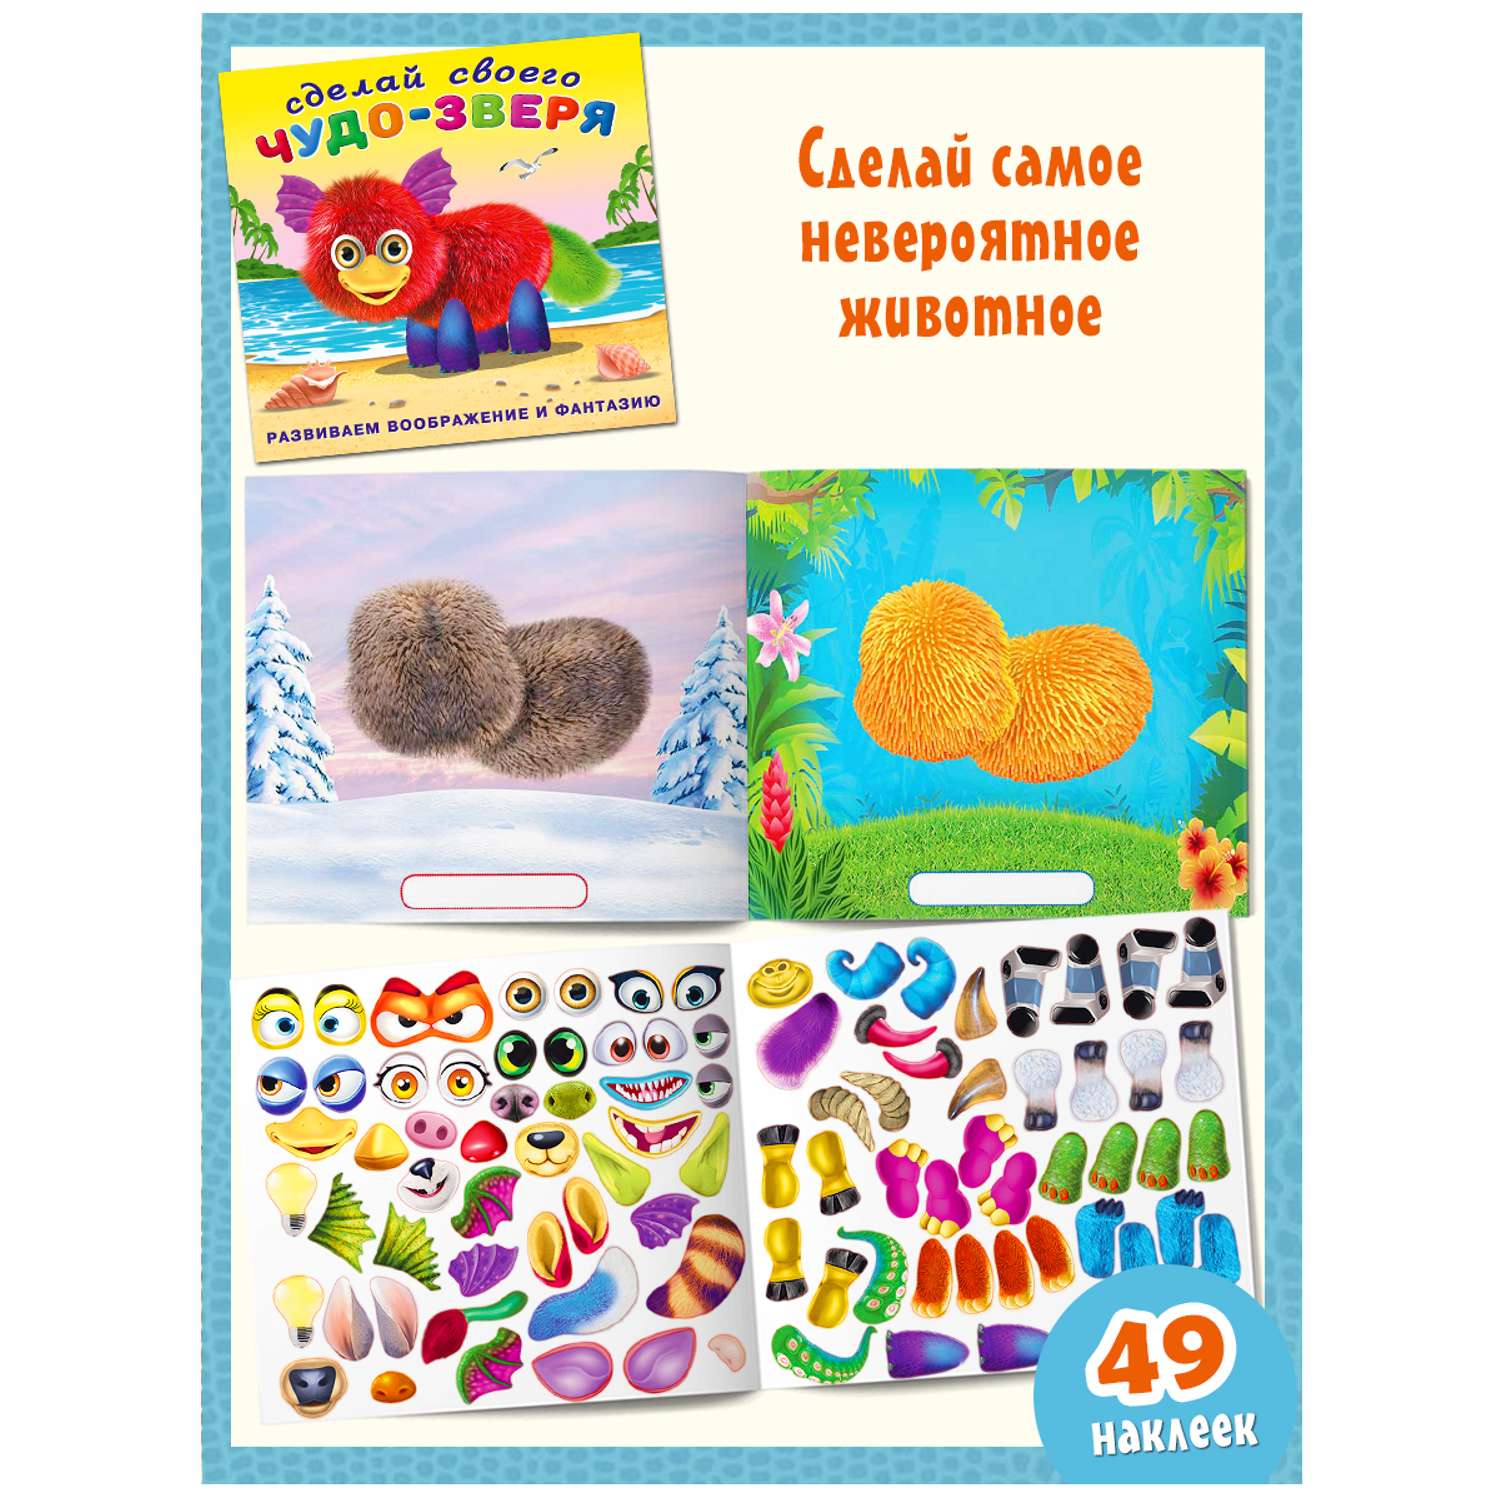 Книги с наклейками Фламинго развивающие для детей и малышей Сделай своего Чудика Монстрика Чудо-зверя 4 книги - фото 7